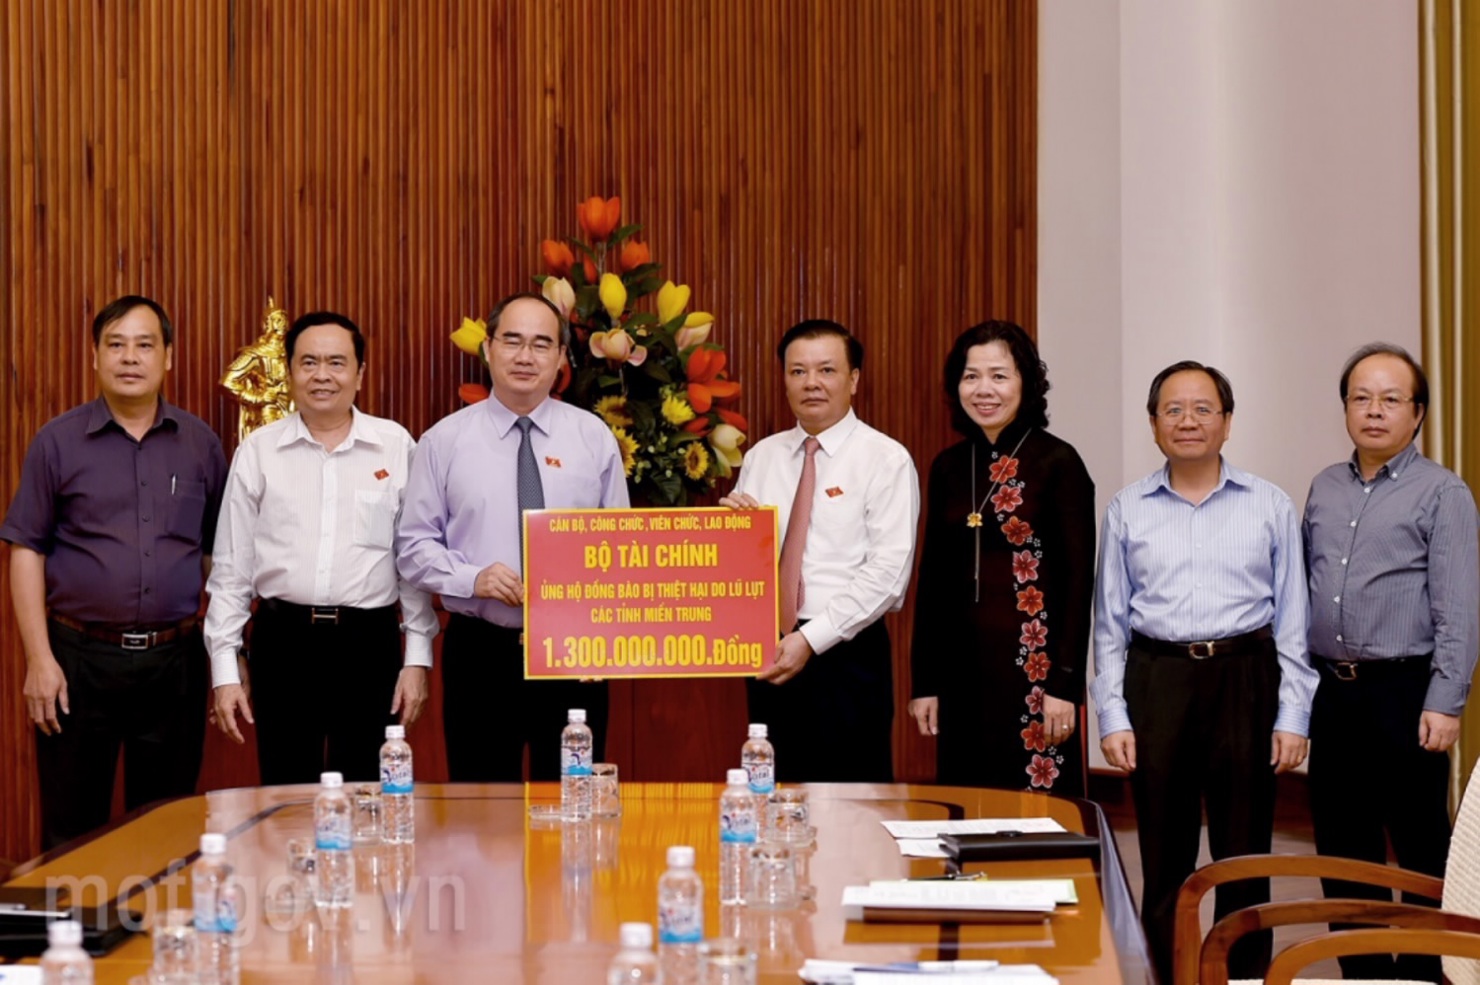 Bộ trưởng Đinh Tiến Dũng đã trao số tiền 1,3 tỷ đồng tới Ủy ban Trung ương Mặt trận Tổ quốc Việt Nam để hỗ trợ cho đồng bào miền Trung. Nguồn: internet